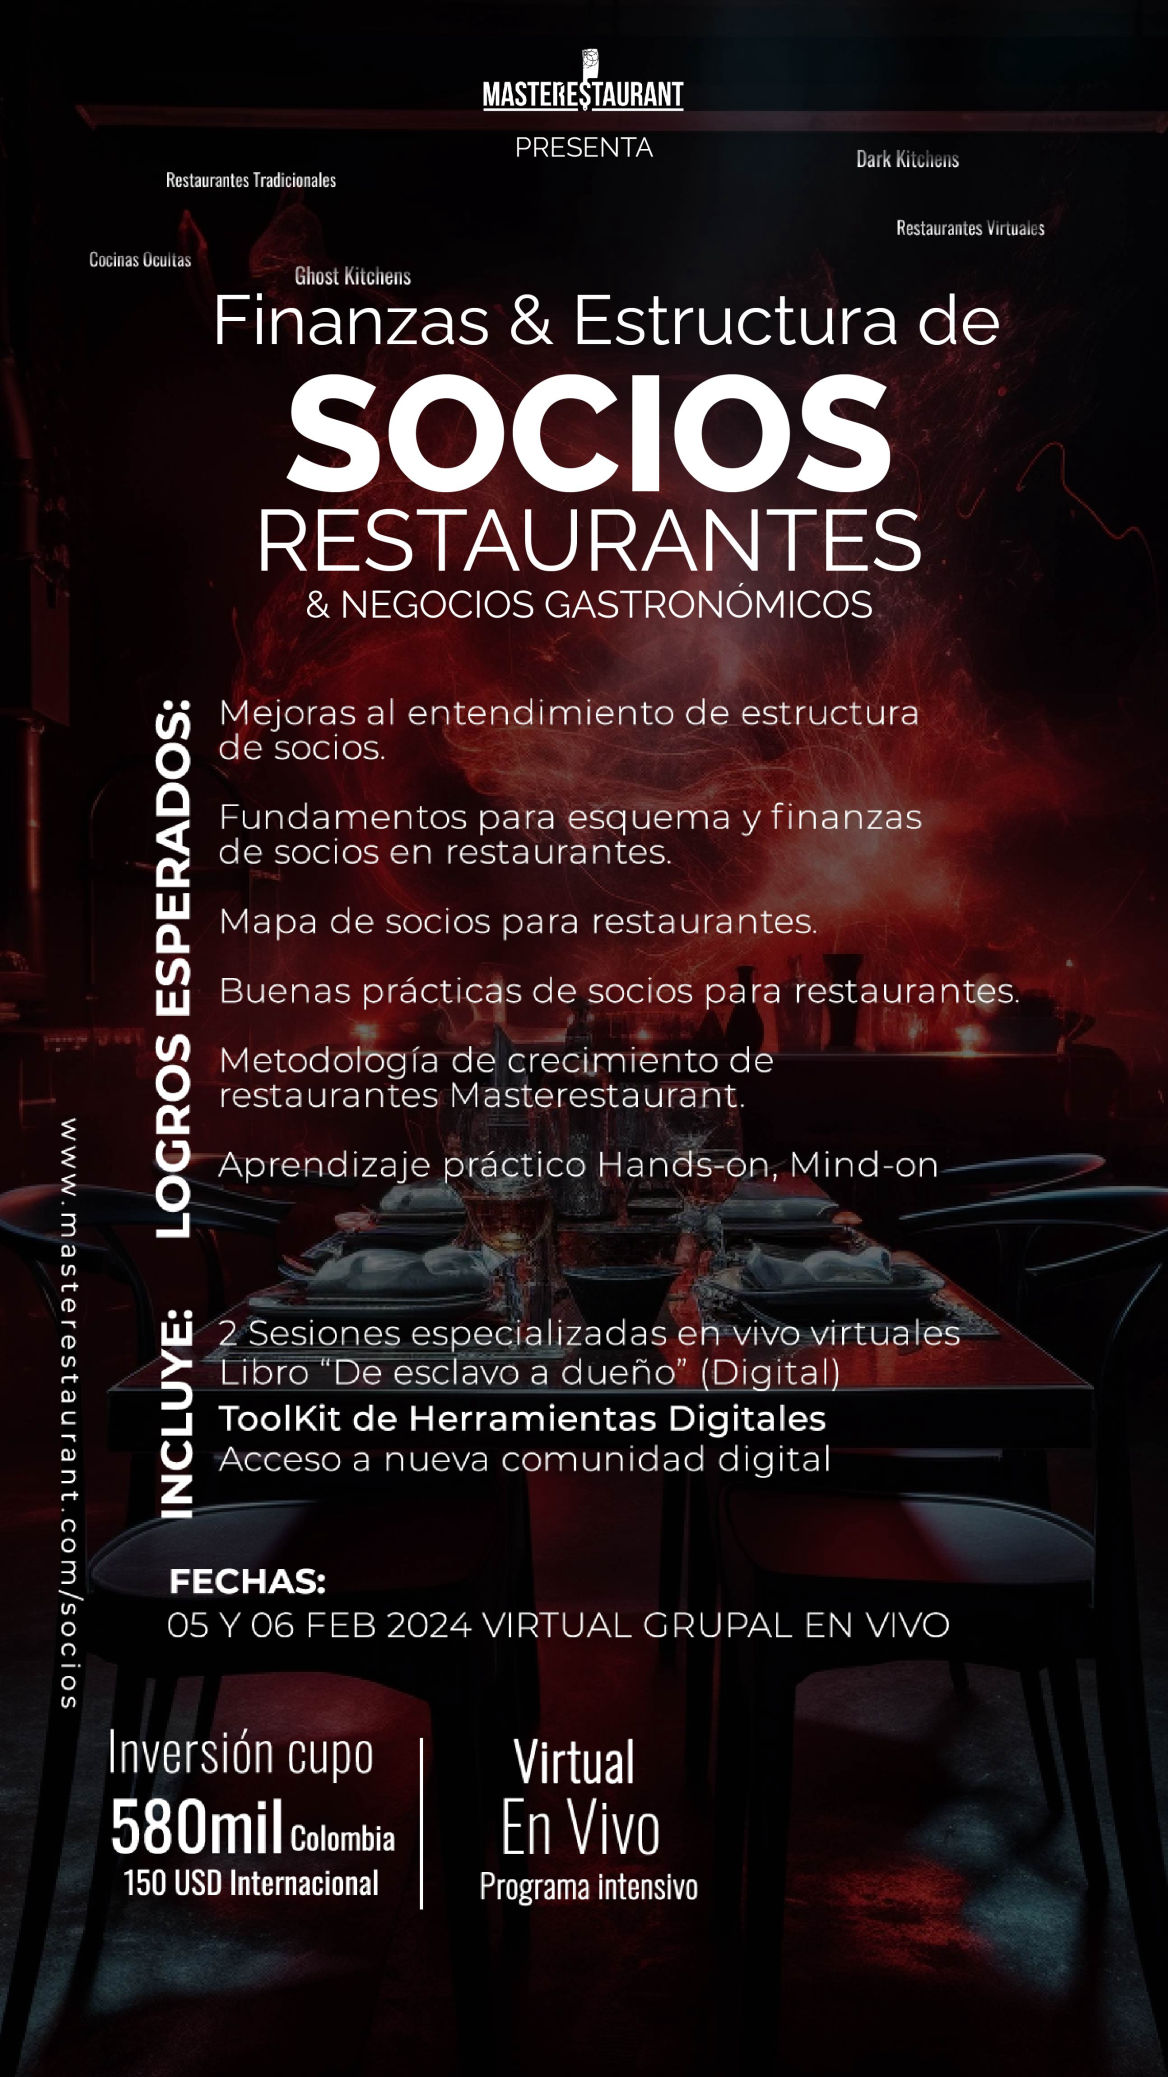 Programa gerencial intensivo de Costos sin Excel para restaurantes, dark kitchens, negocios gastronómicos masterestaurant (master restaurant)